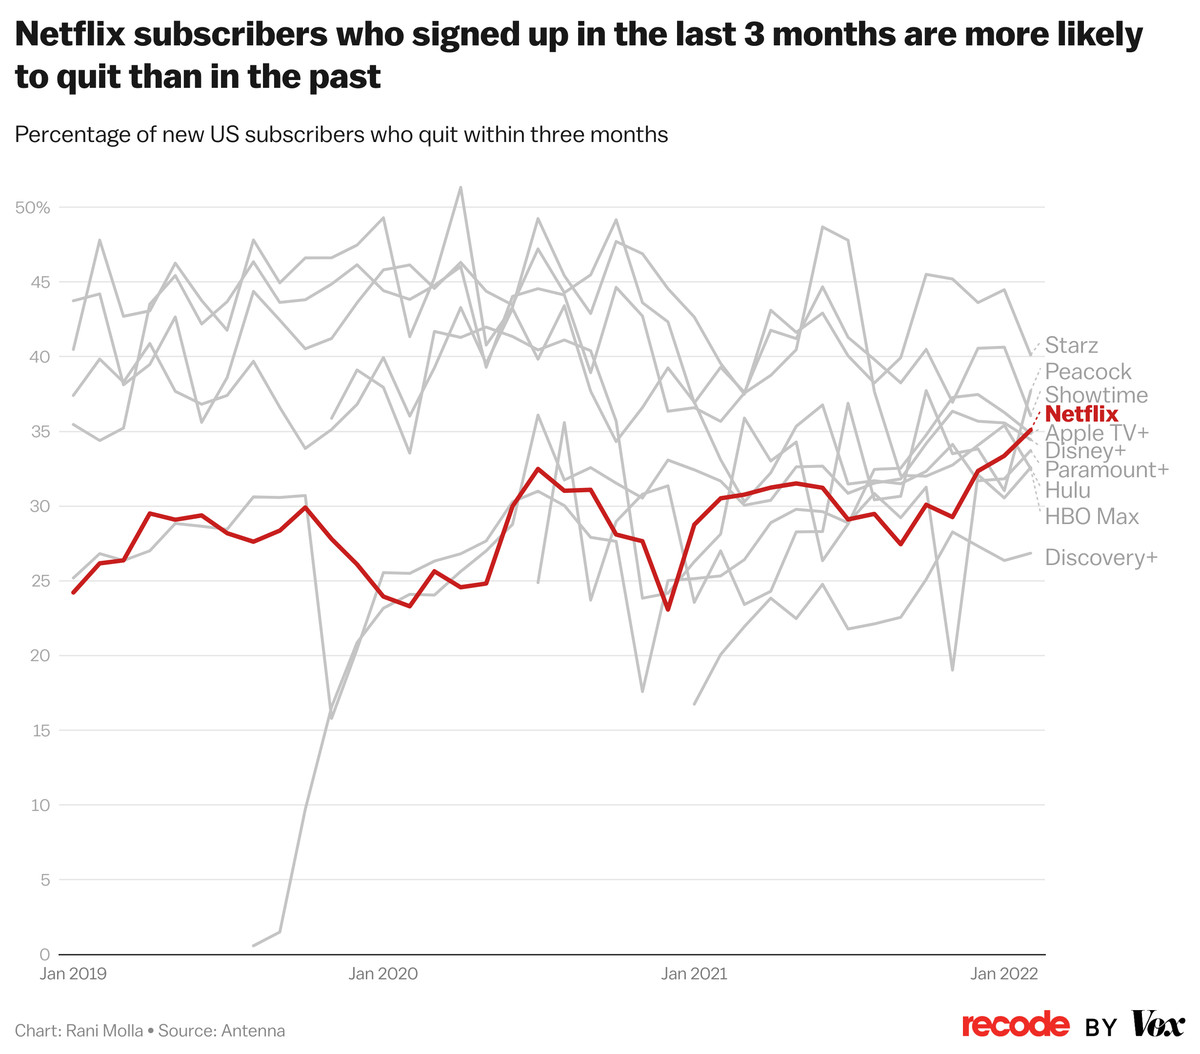 Les abonnés Netflix qui se sont inscrits au cours des 3 derniers mois sont plus susceptibles d'arrêter que par le passé 